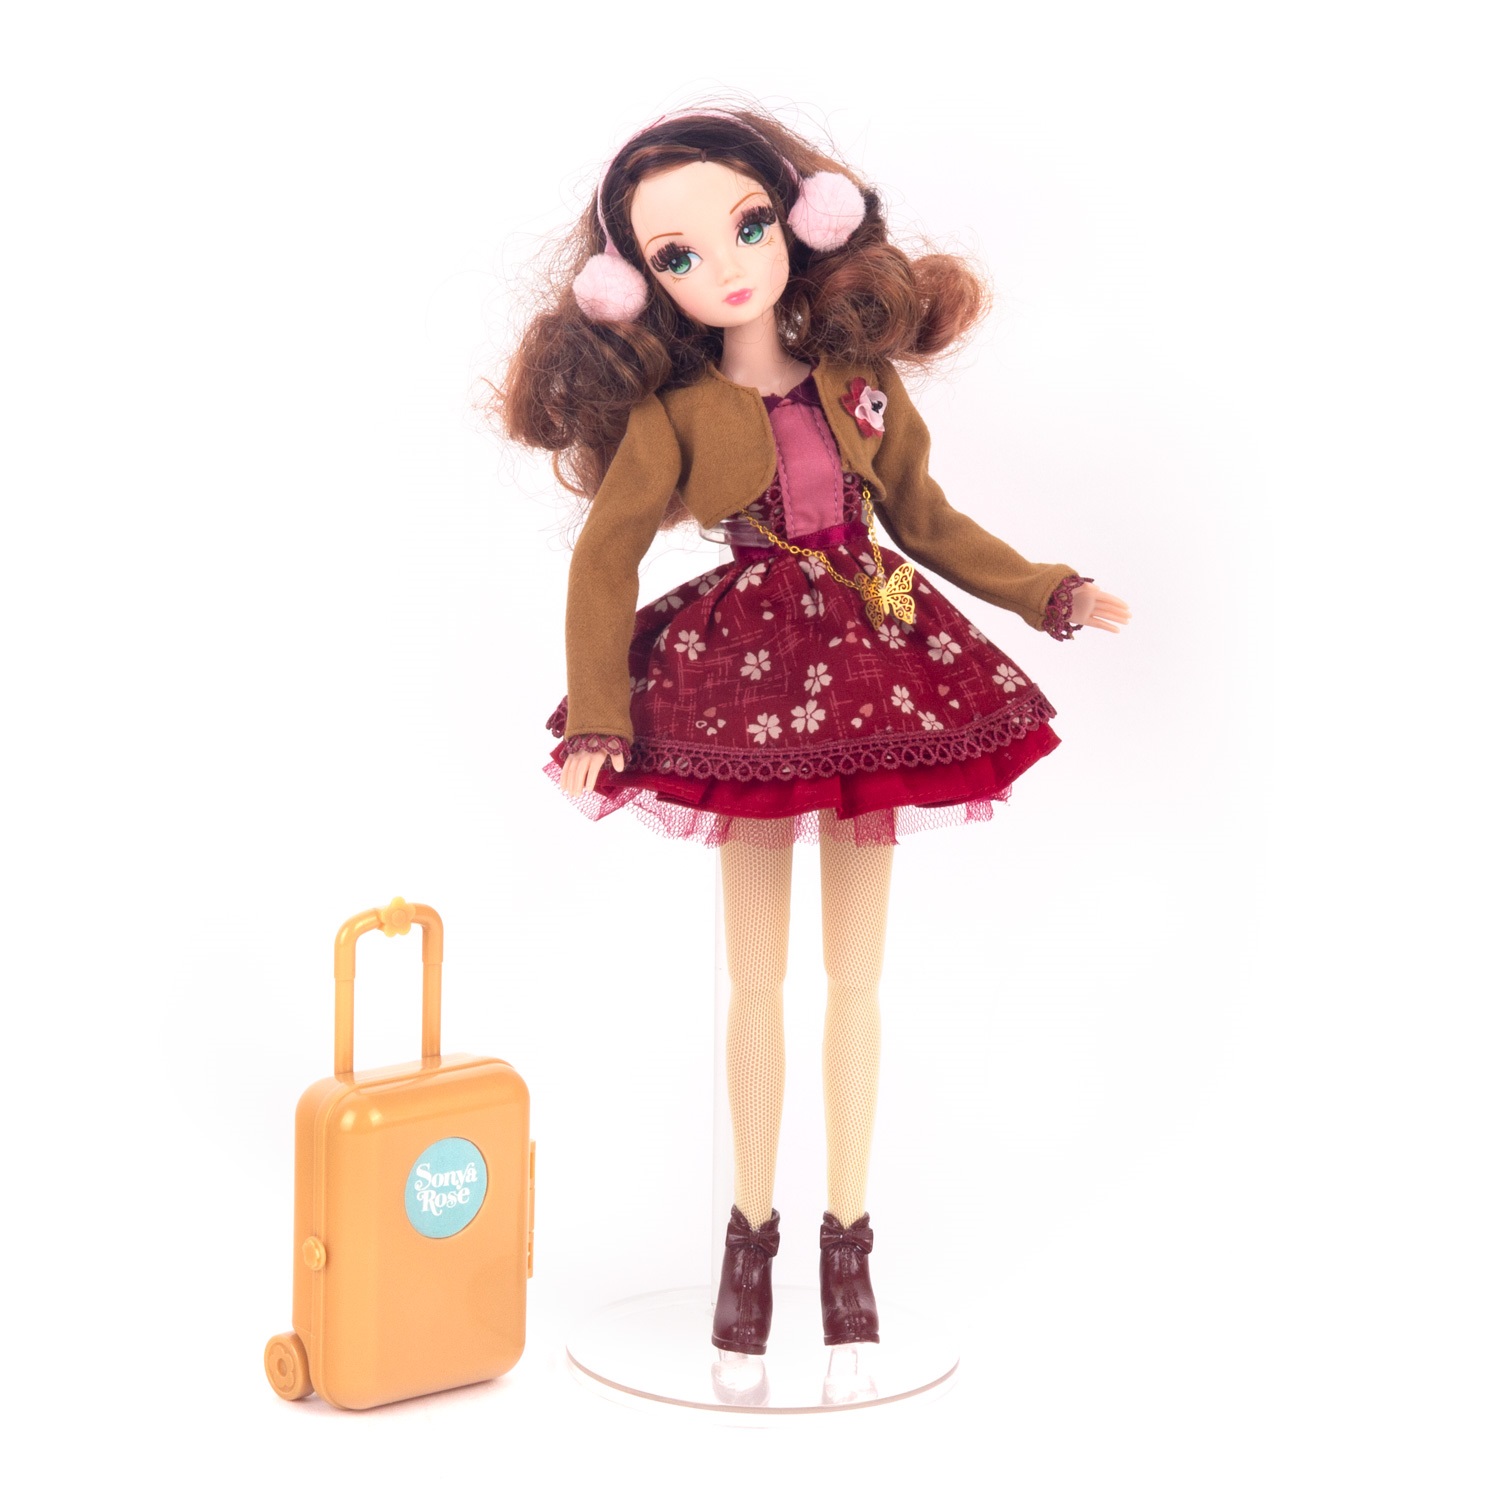 Кукла Sonya Rose, серия "Daily collection", Путешествие в Японию R4420N - фото 1